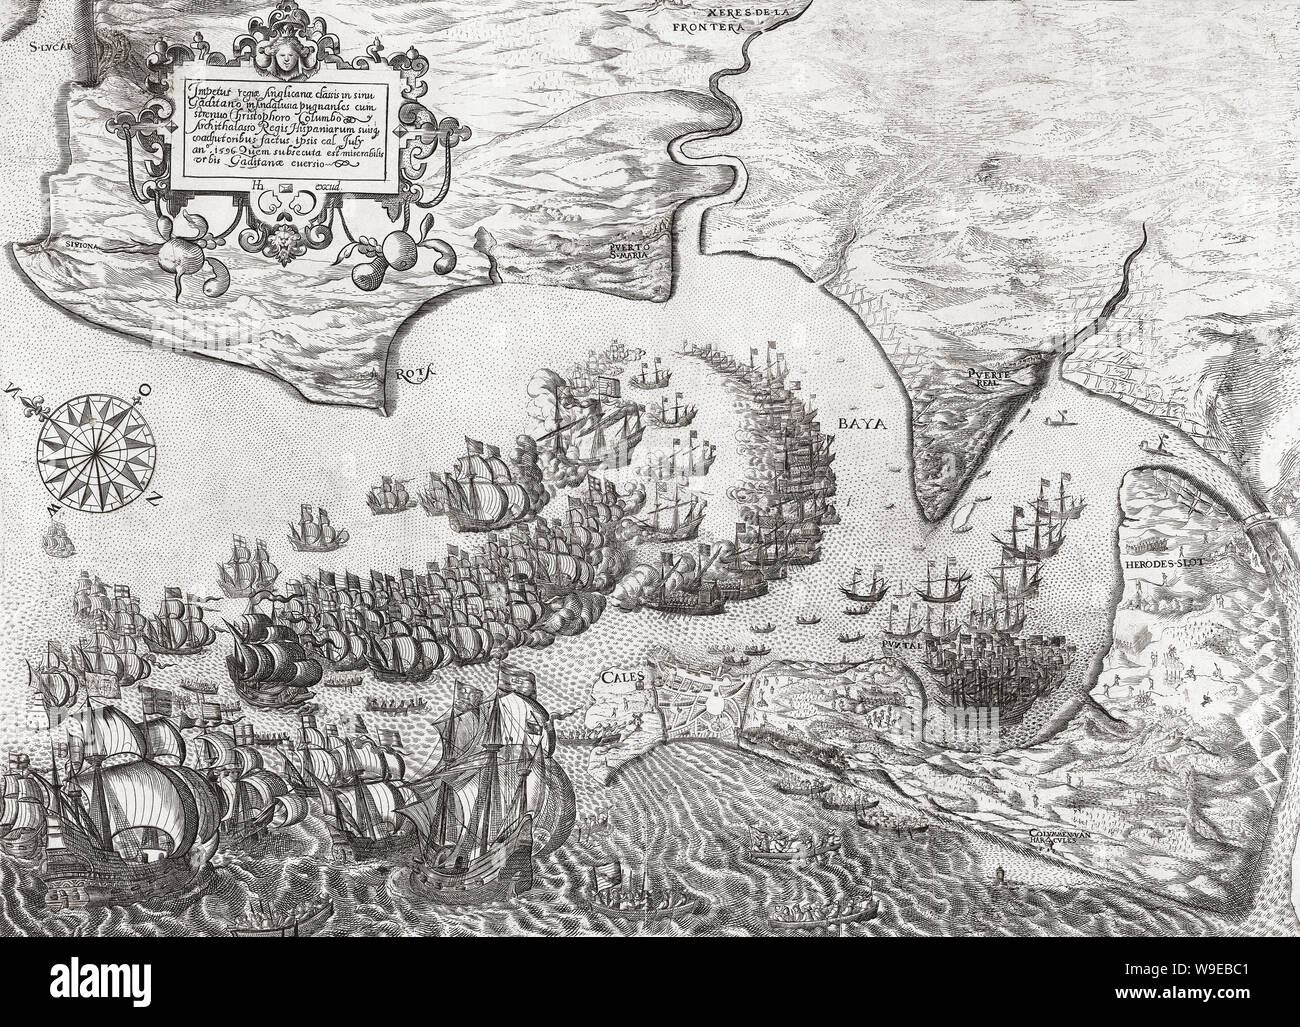 La sconfitta della flotta spagnola e la caduta di Cadice, il 1 Luglio 1596 da una flotta anglo-olandese durante la guerra Anglo-Spanish. Foto Stock